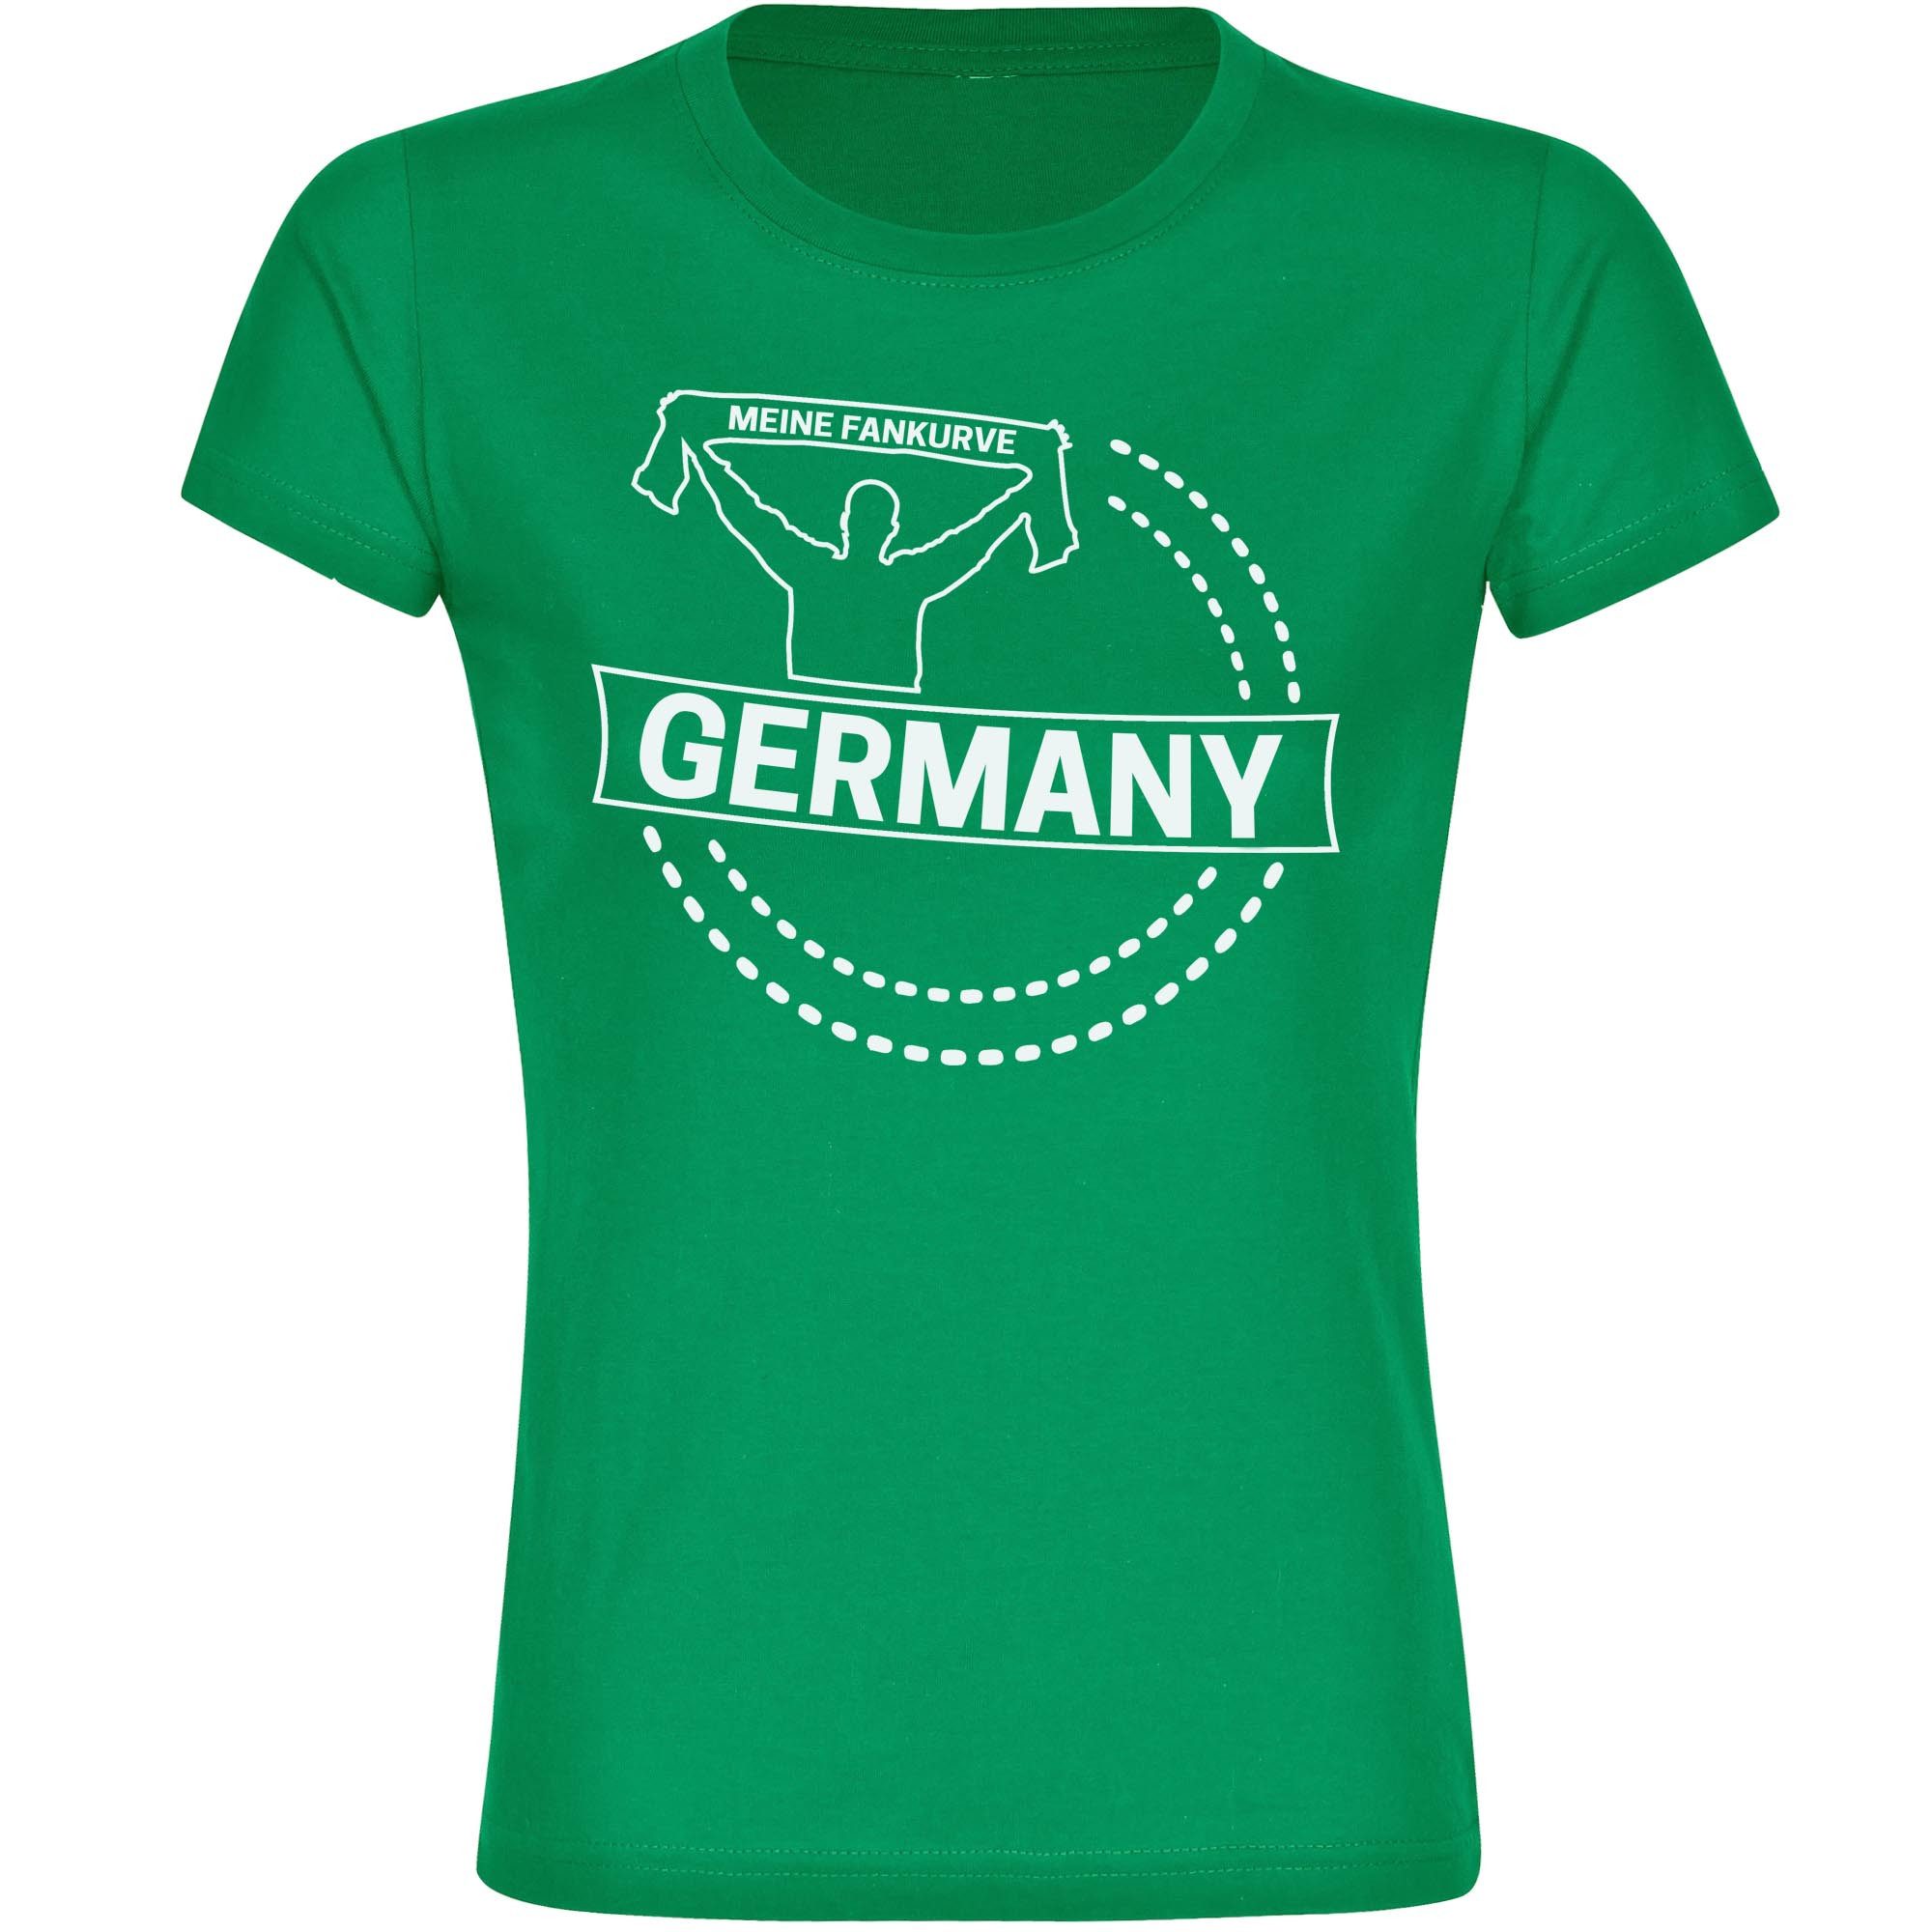 multifanshop T-Shirt Damen Germany - Meine Fankurve - Frauen